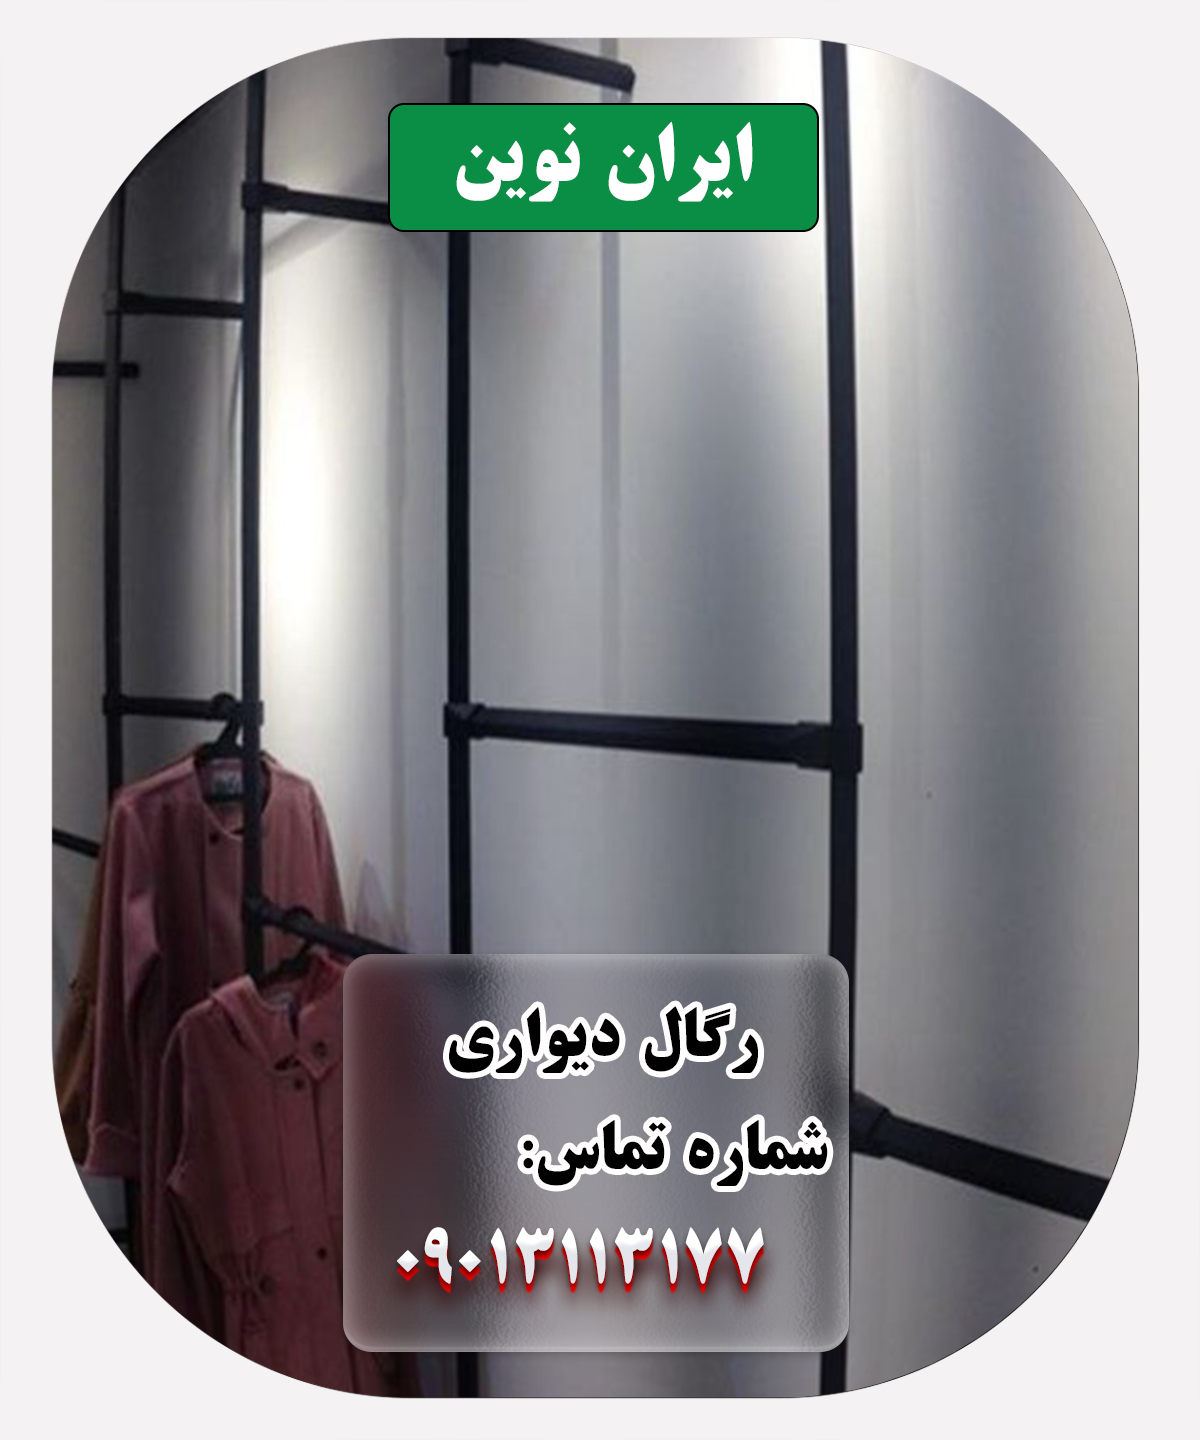 رگال دیواری ایران نوین: شکوه و کاربرد در دکور فروشگاه لباس